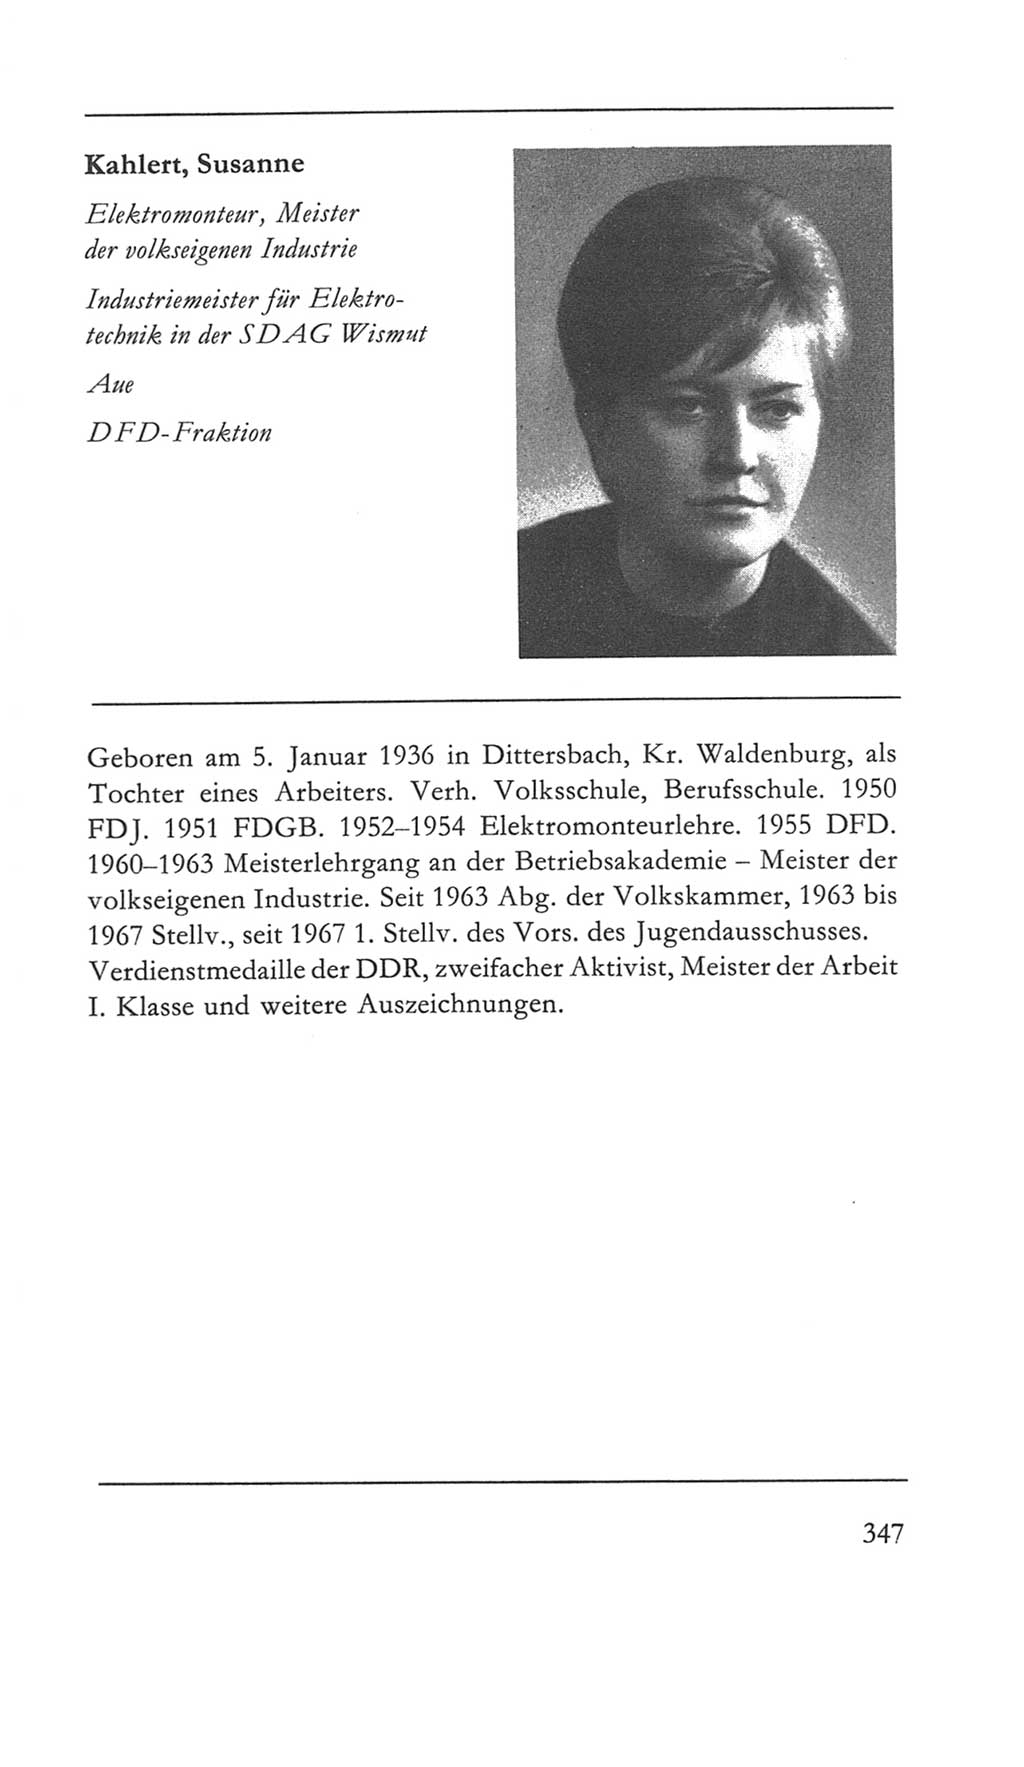 Volkskammer (VK) der Deutschen Demokratischen Republik (DDR) 5. Wahlperiode 1967-1971, Seite 347 (VK. DDR 5. WP. 1967-1971, S. 347)